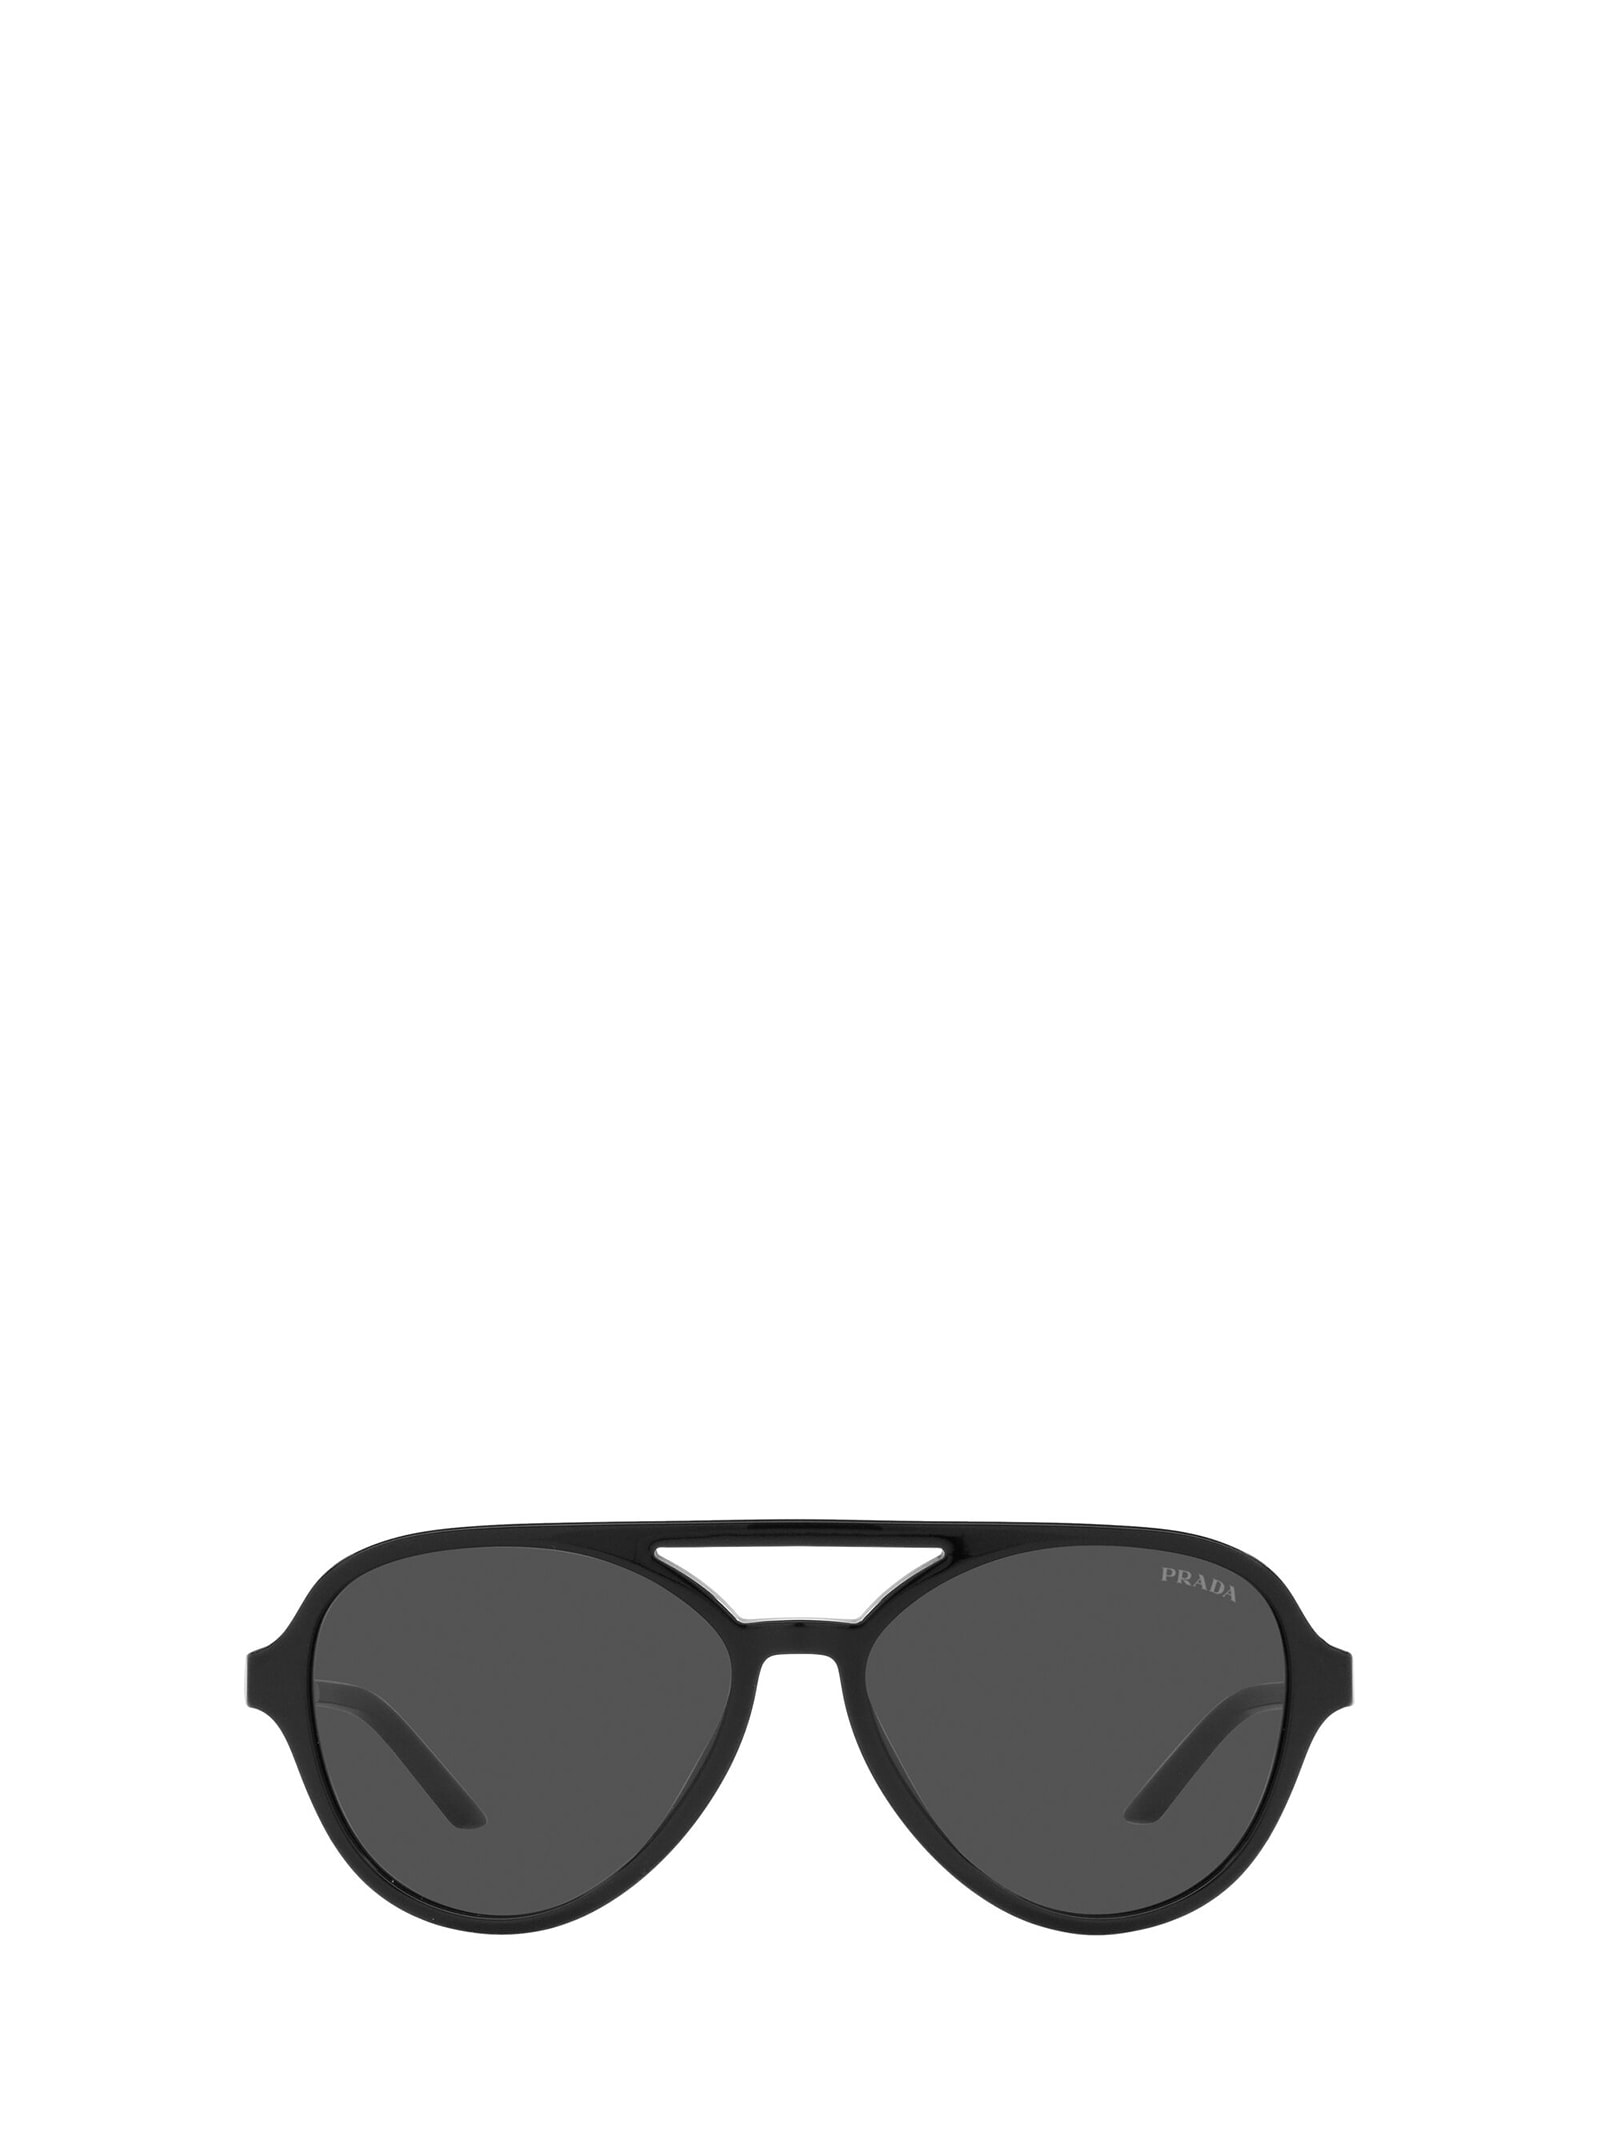 Prada Prada Pr 13ws Black Sunglasses